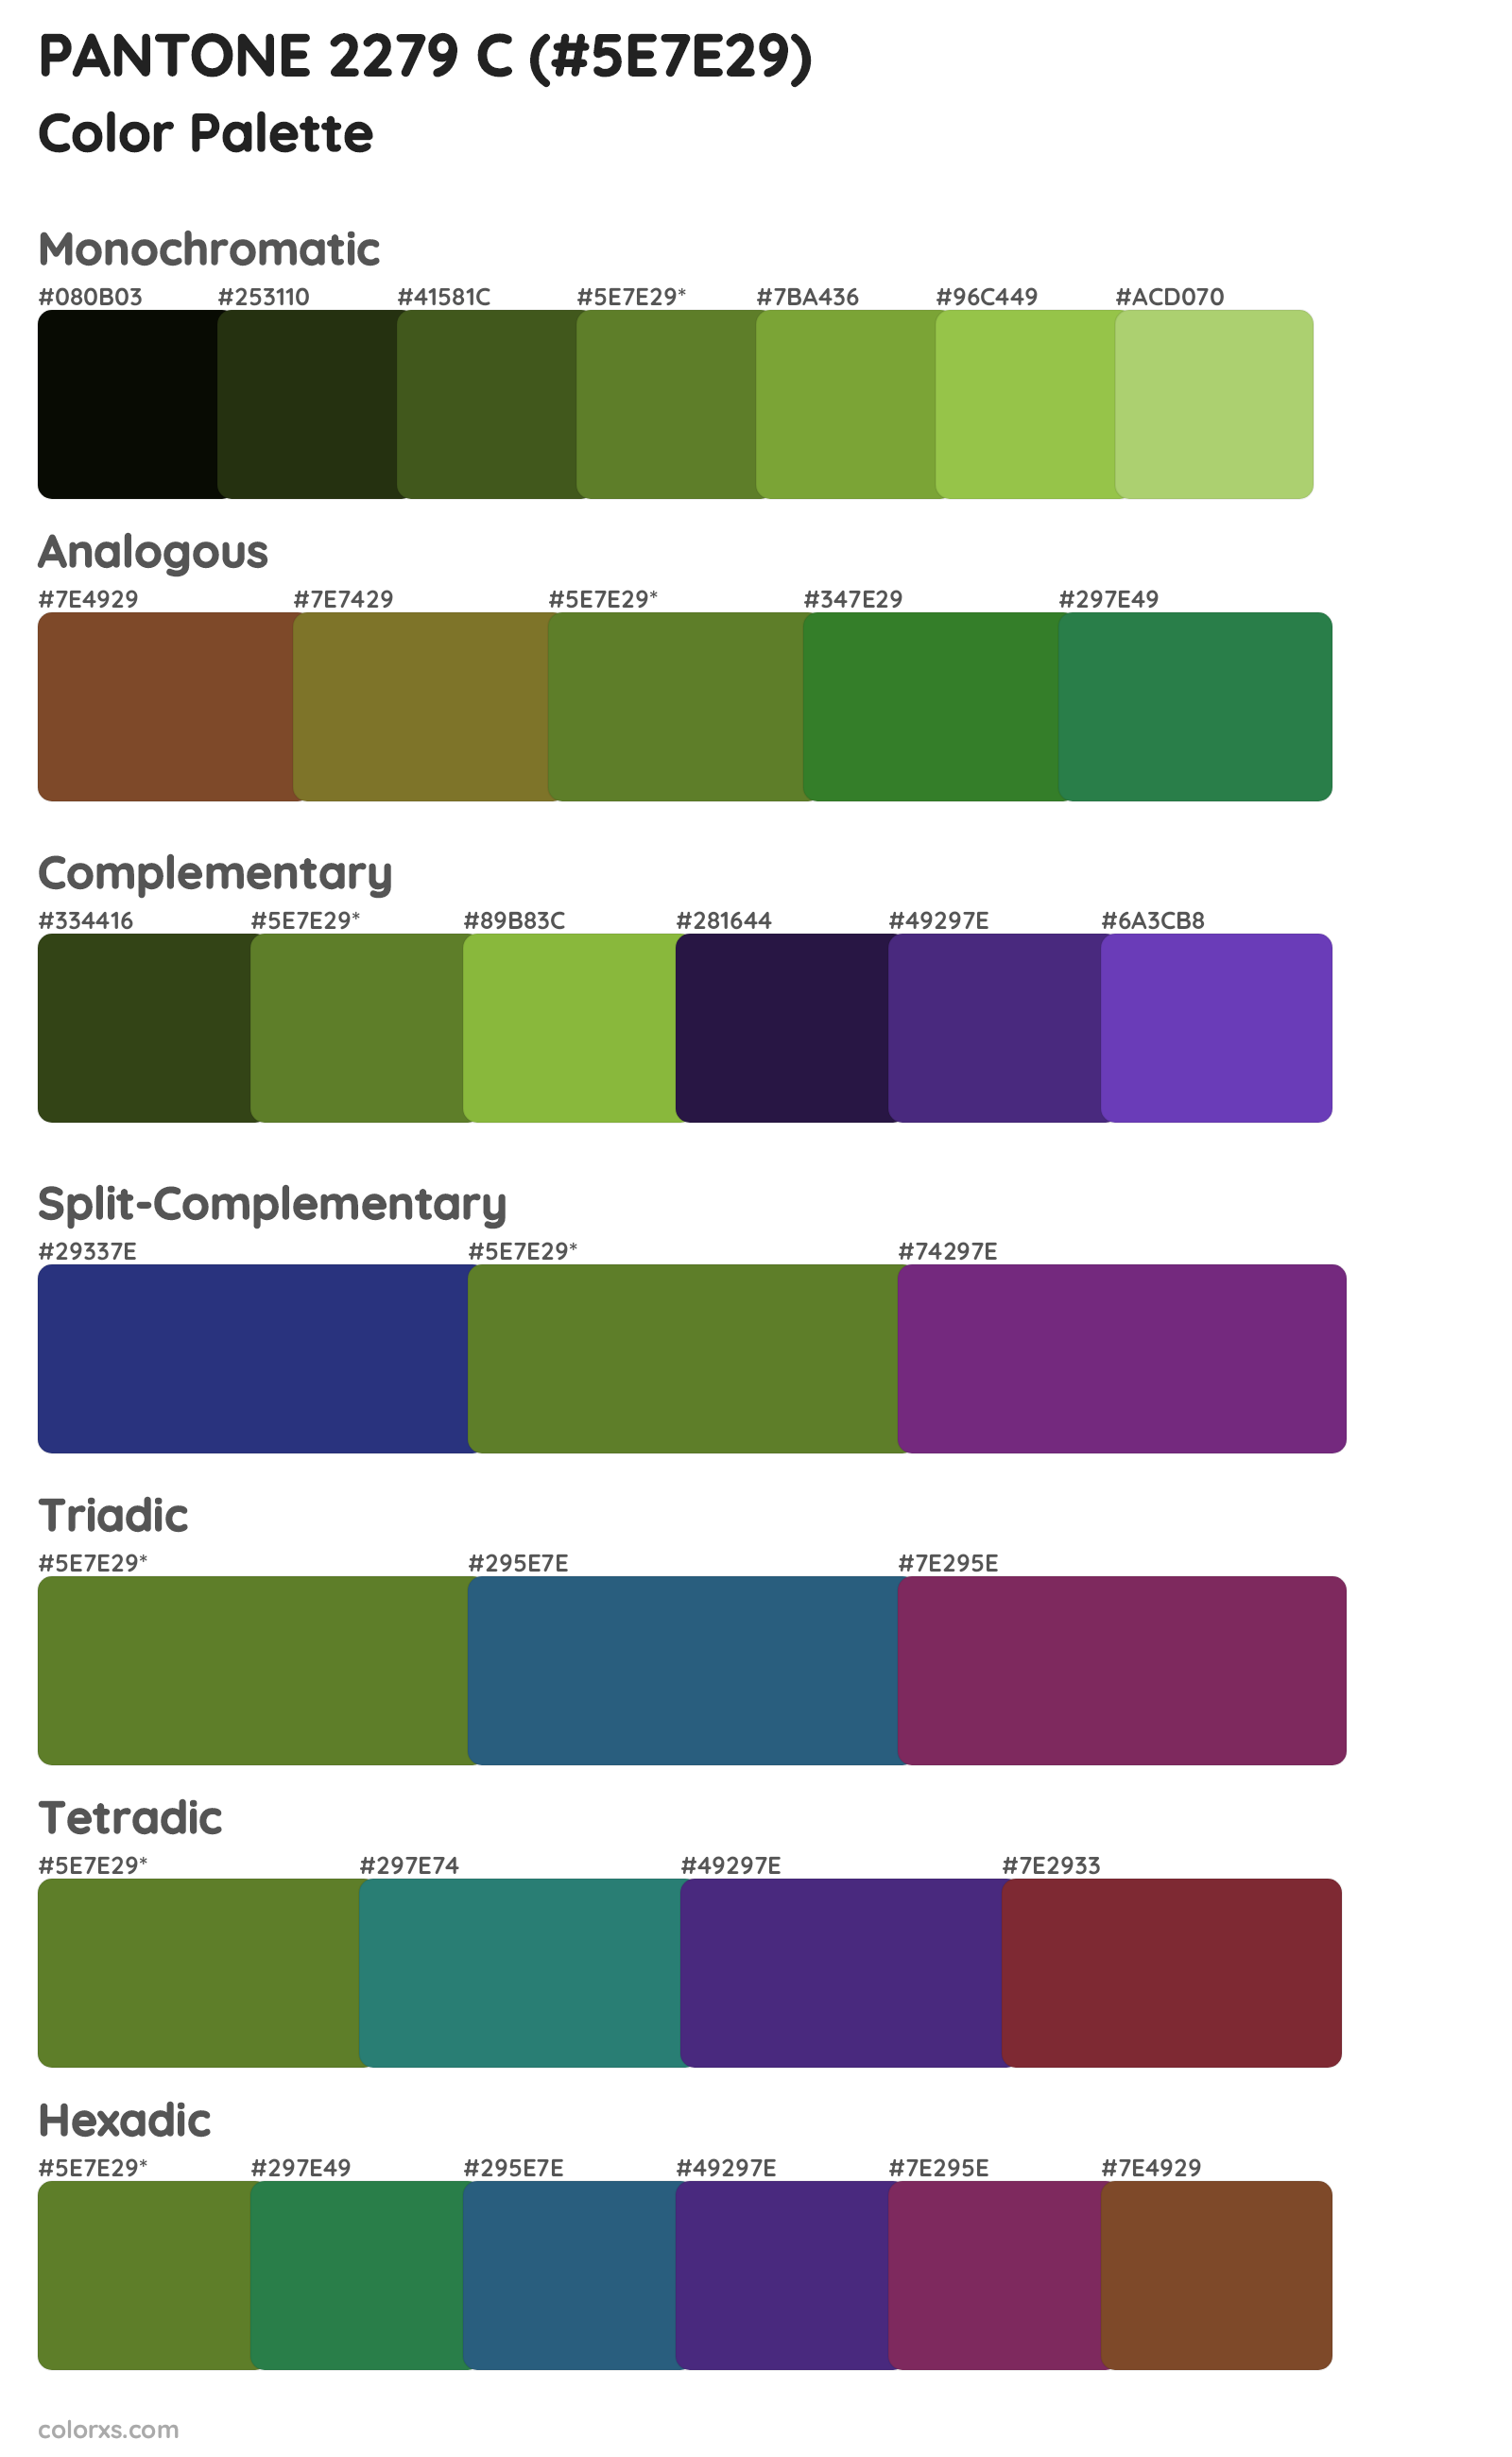 PANTONE 2279 C Color Scheme Palettes